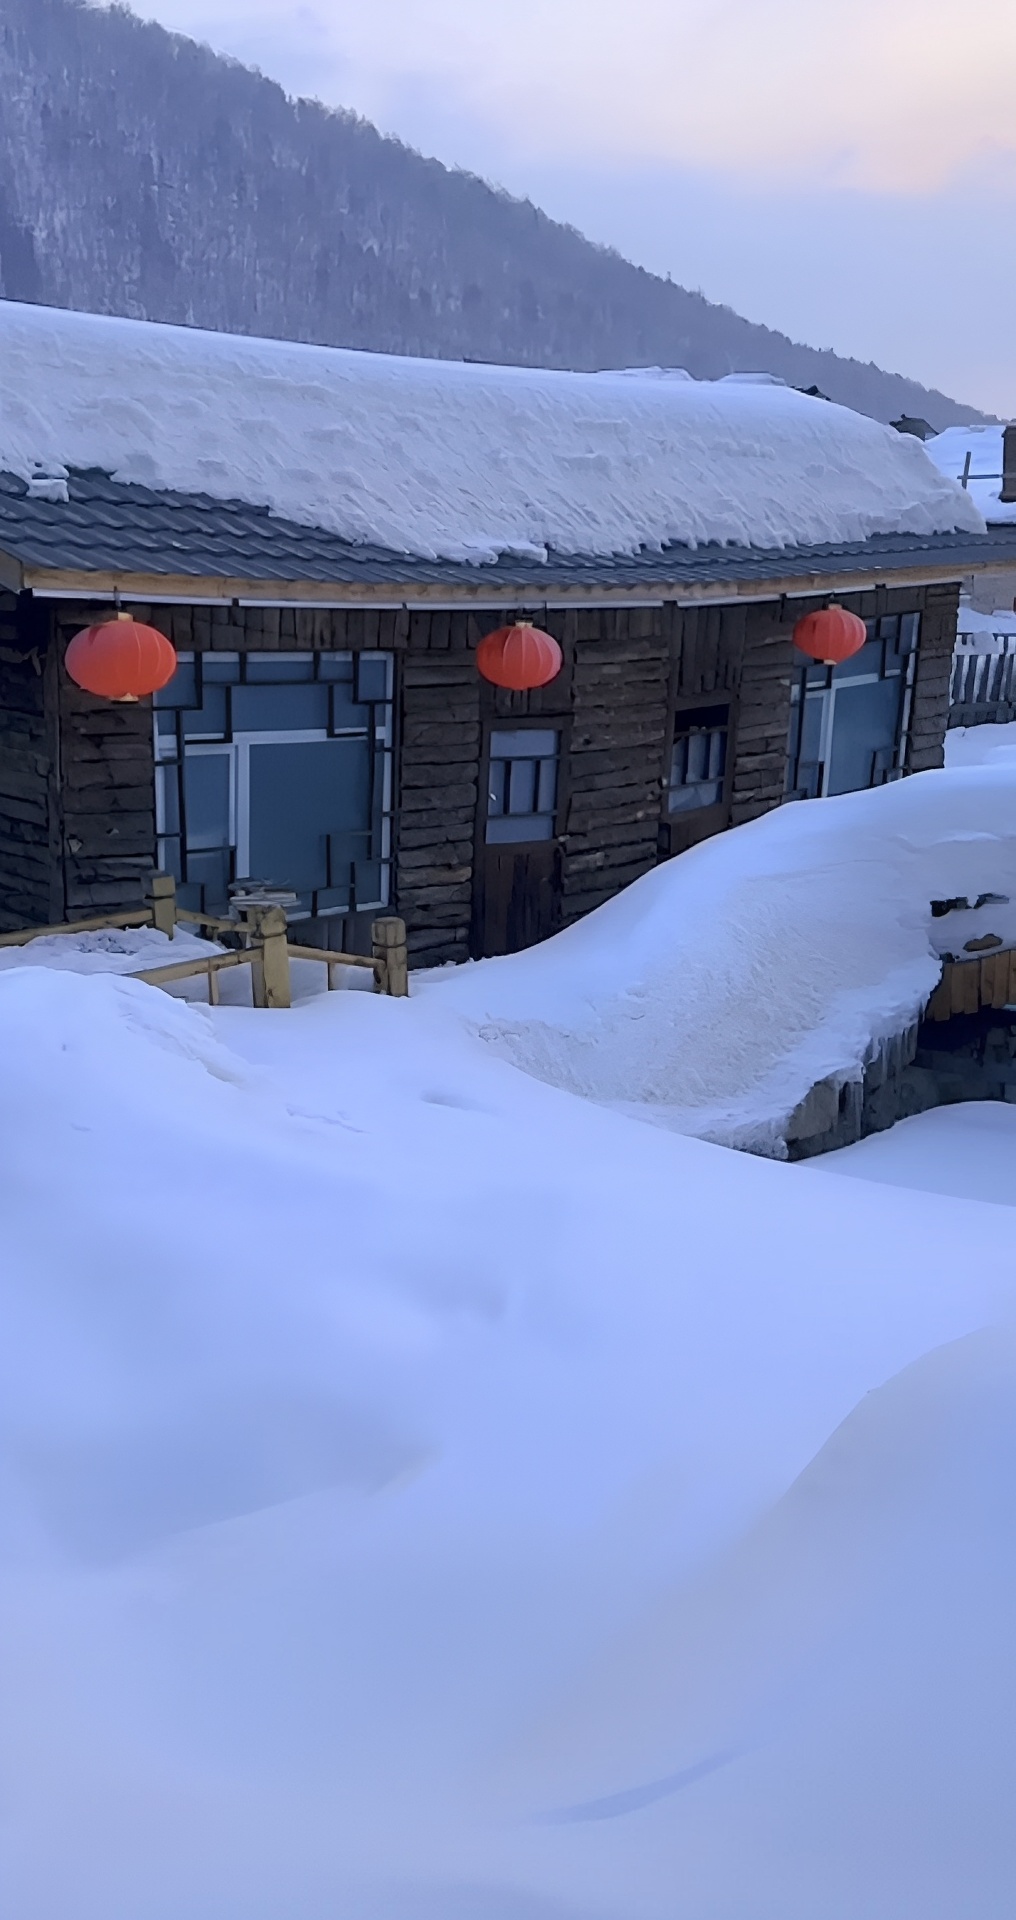 中国雪乡搜 位于黑龙江省，是一个以雪景为主题的旅游胜地。如果您想前往雪乡旅游，以下是一些攻略： 1.